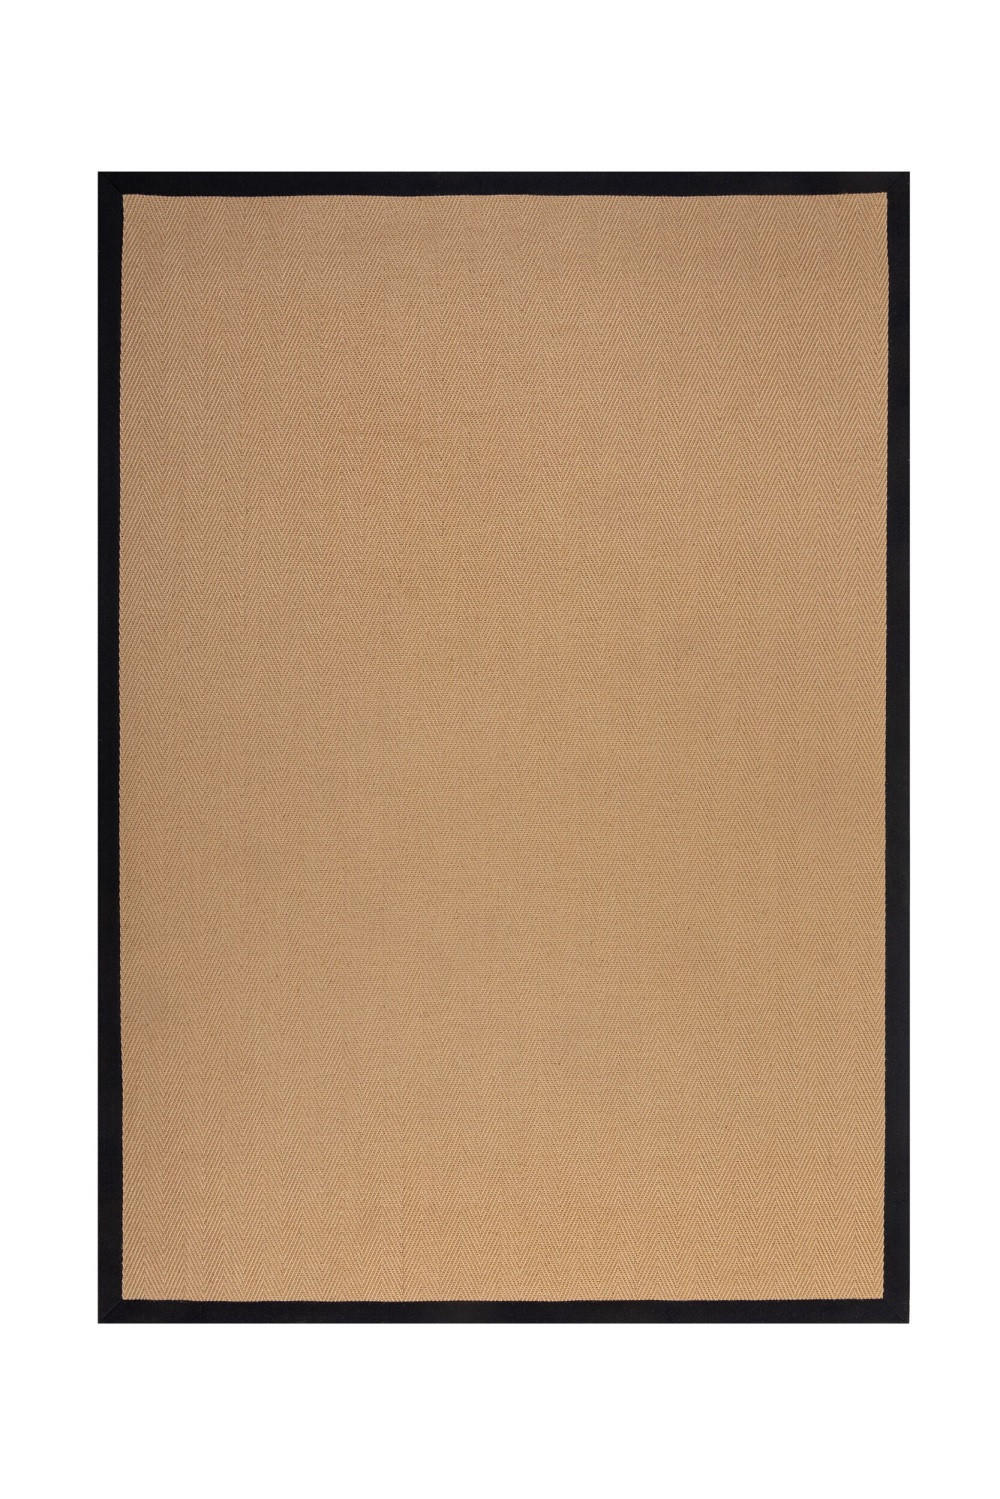 FLACHWEBETEPPICH 200/290 cm Herringbone Border  - Schwarz, KONVENTIONELL, Naturmaterialien/Textil (200/290cm)